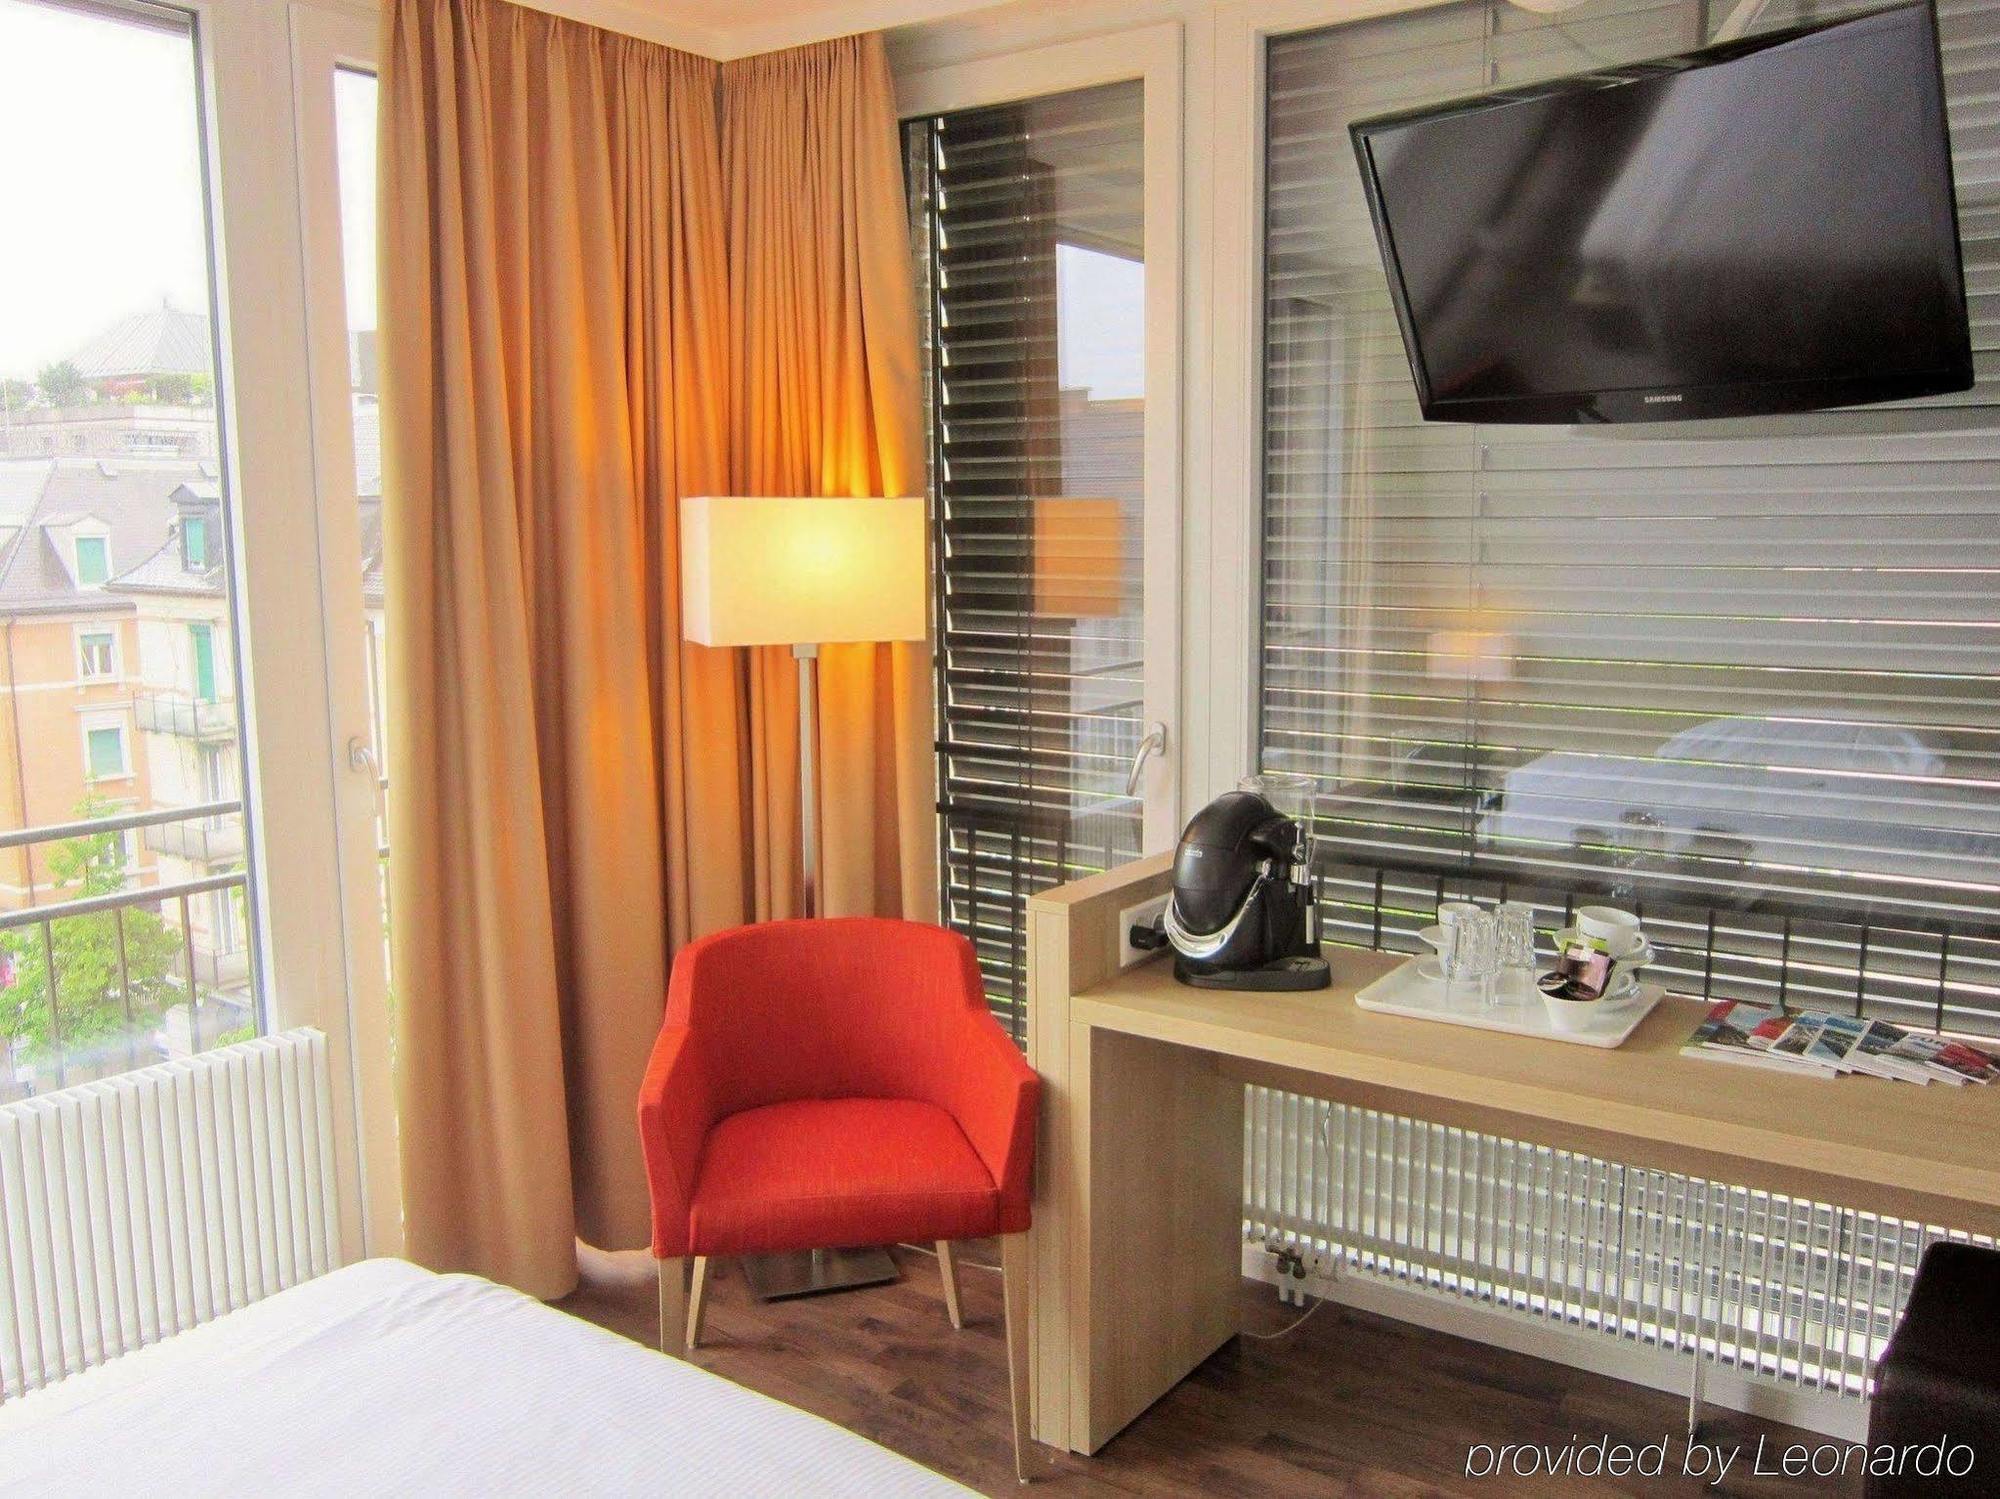 Hotel Oerlikon Inn Zurich Luaran gambar